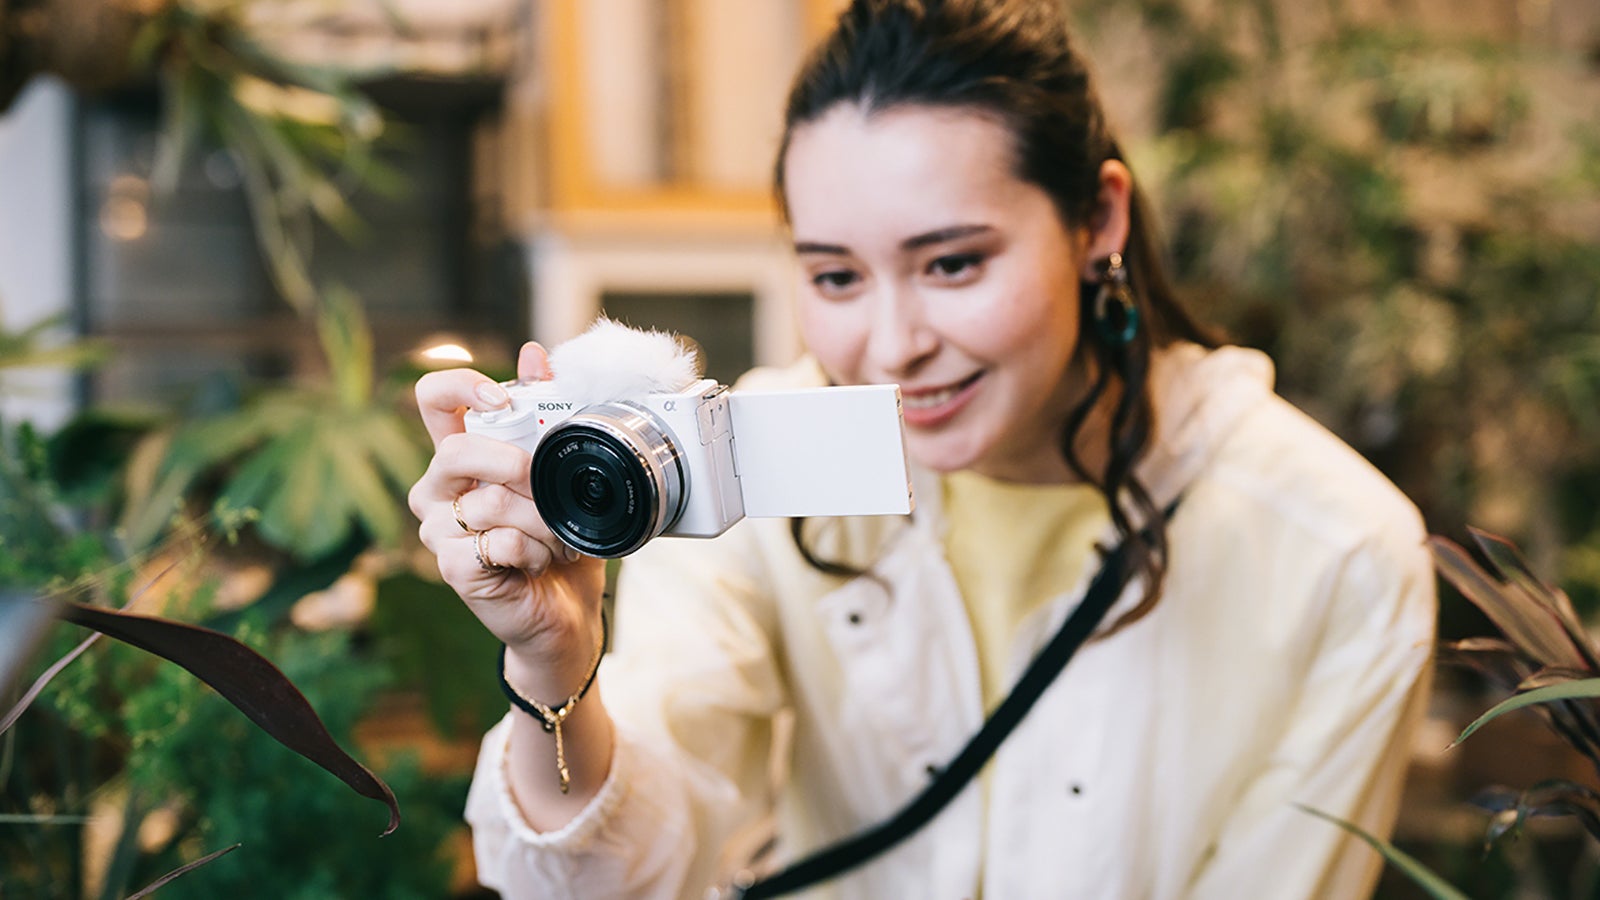 Sony ZV-E10: The Ultimate Vlogging Camera for Content Creators